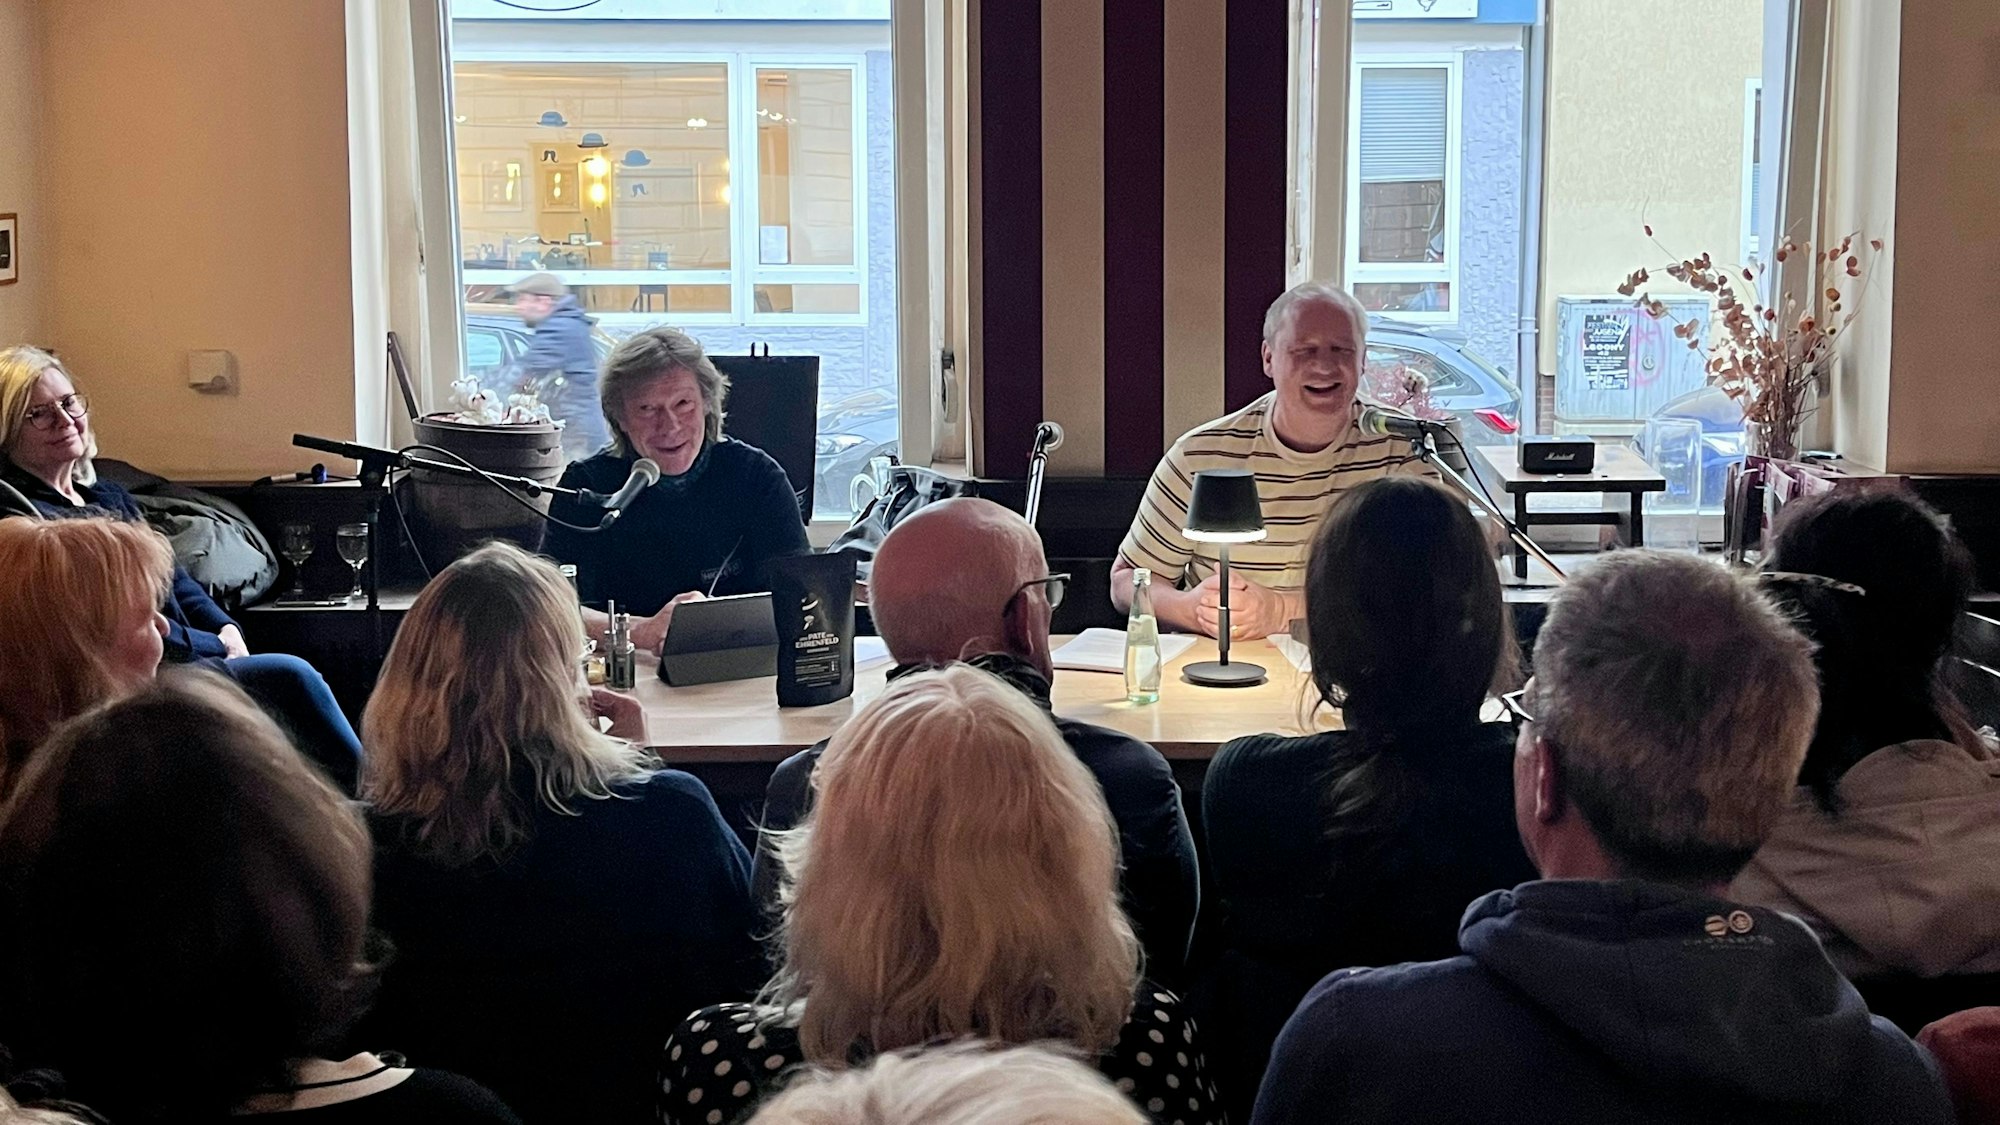 Der Sprecher und Sänger Gerd Köster sowie Autor Manfred Theisen bringen auf der Lesung das Publikum zum Lachen.